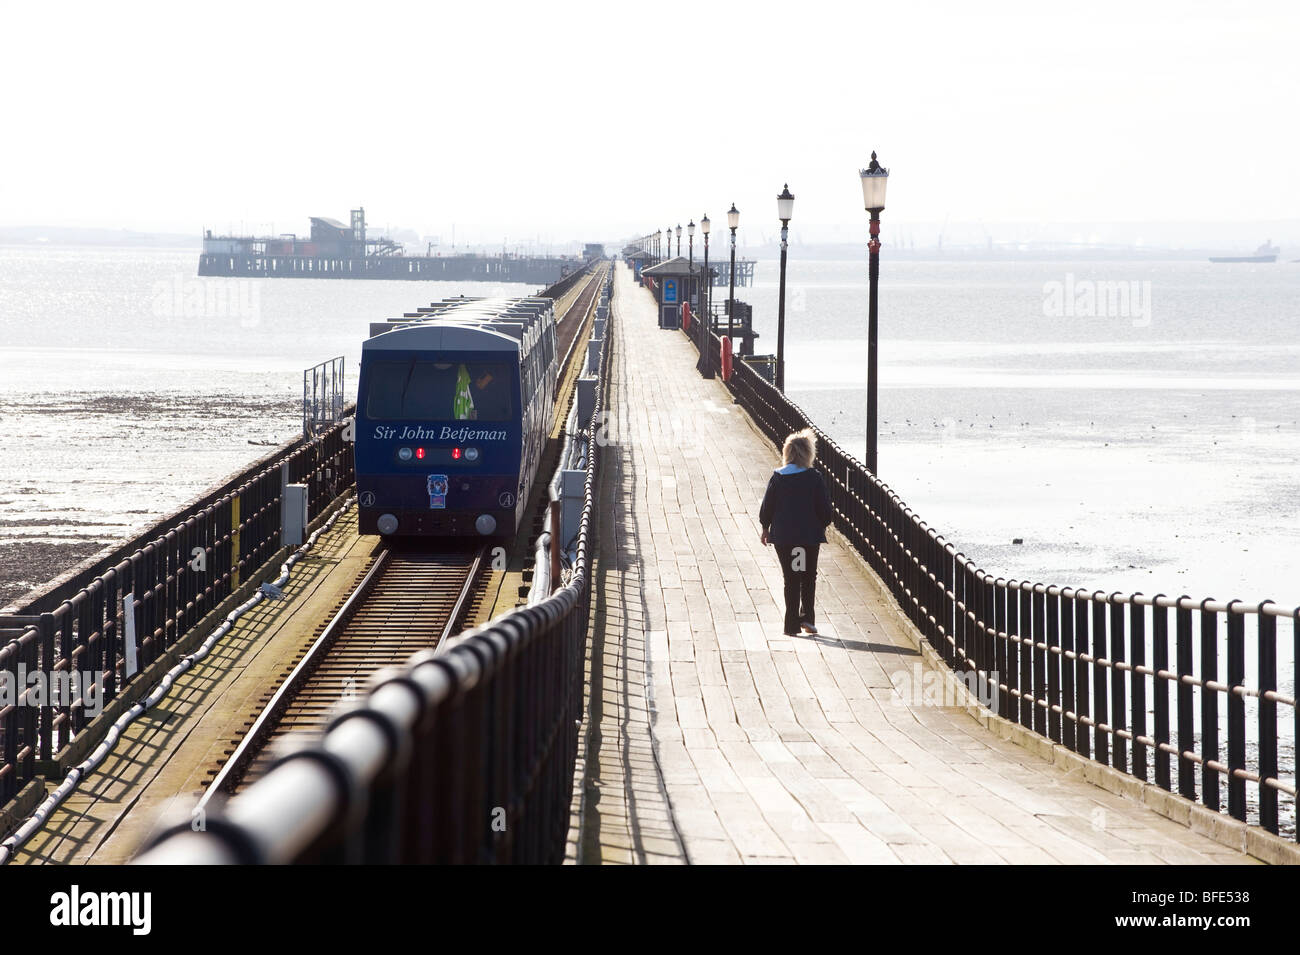 Southend Pier - il molo di piacere più lungo del mondo, il treno Sir John Betjeman parte per un viaggio di 1.33 miglia. Foto Stock